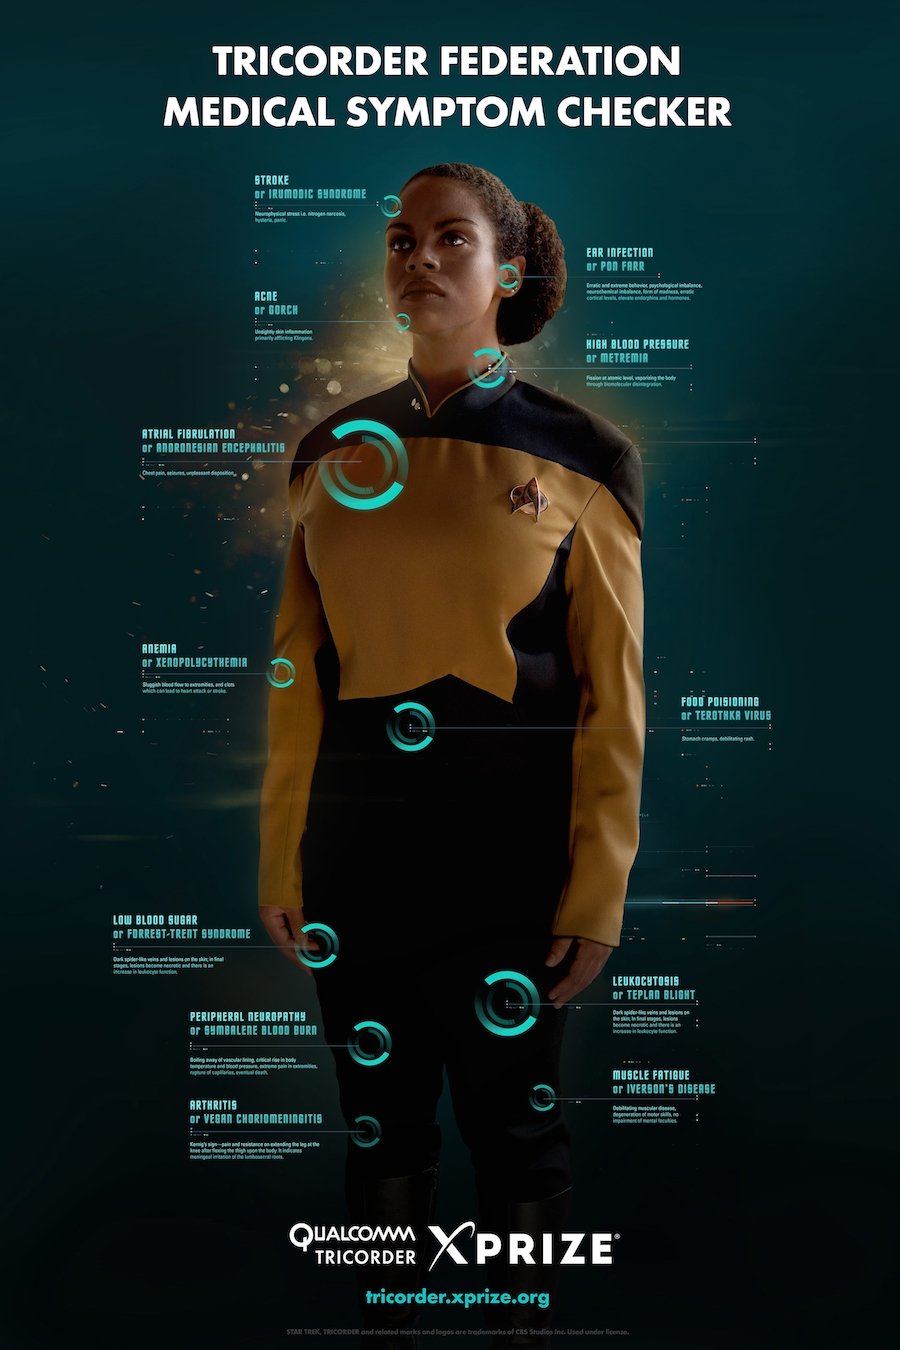 科幻影集Star Trek劇中，太空船上的醫生李奧納多麥考伊(Dr. Leonard McCoy)最常用的就是使用醫療儀器三度儀(Tricorder)來檢查企業號上的病患，只要花上幾秒的時間就能夠診斷出疾病。